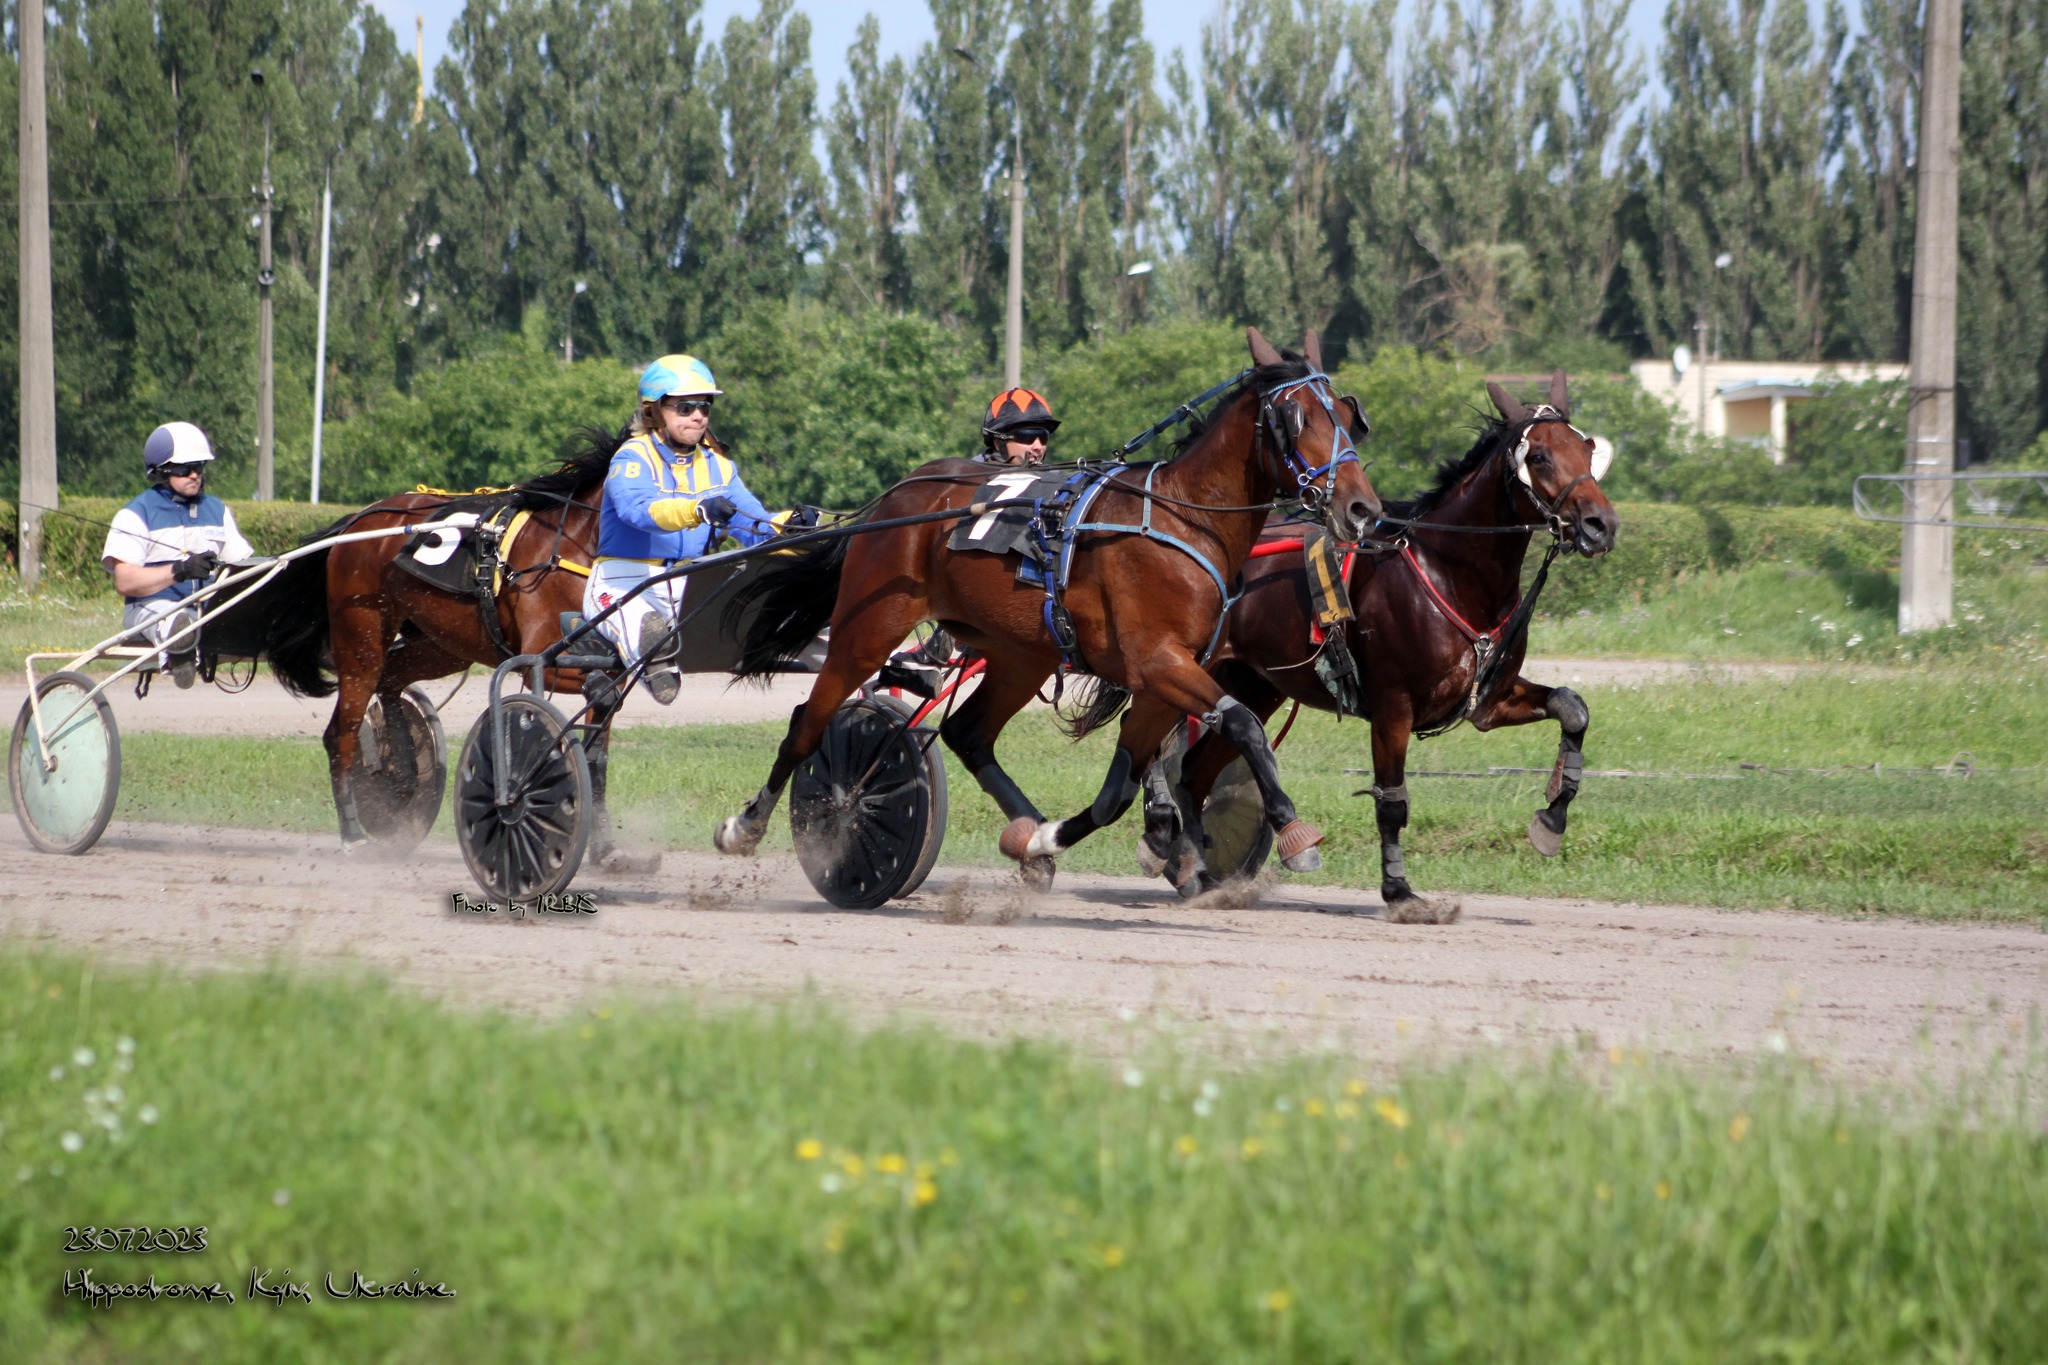 На Київському іподромі сьогодні проходять випробування для 44 коней рисистих порід